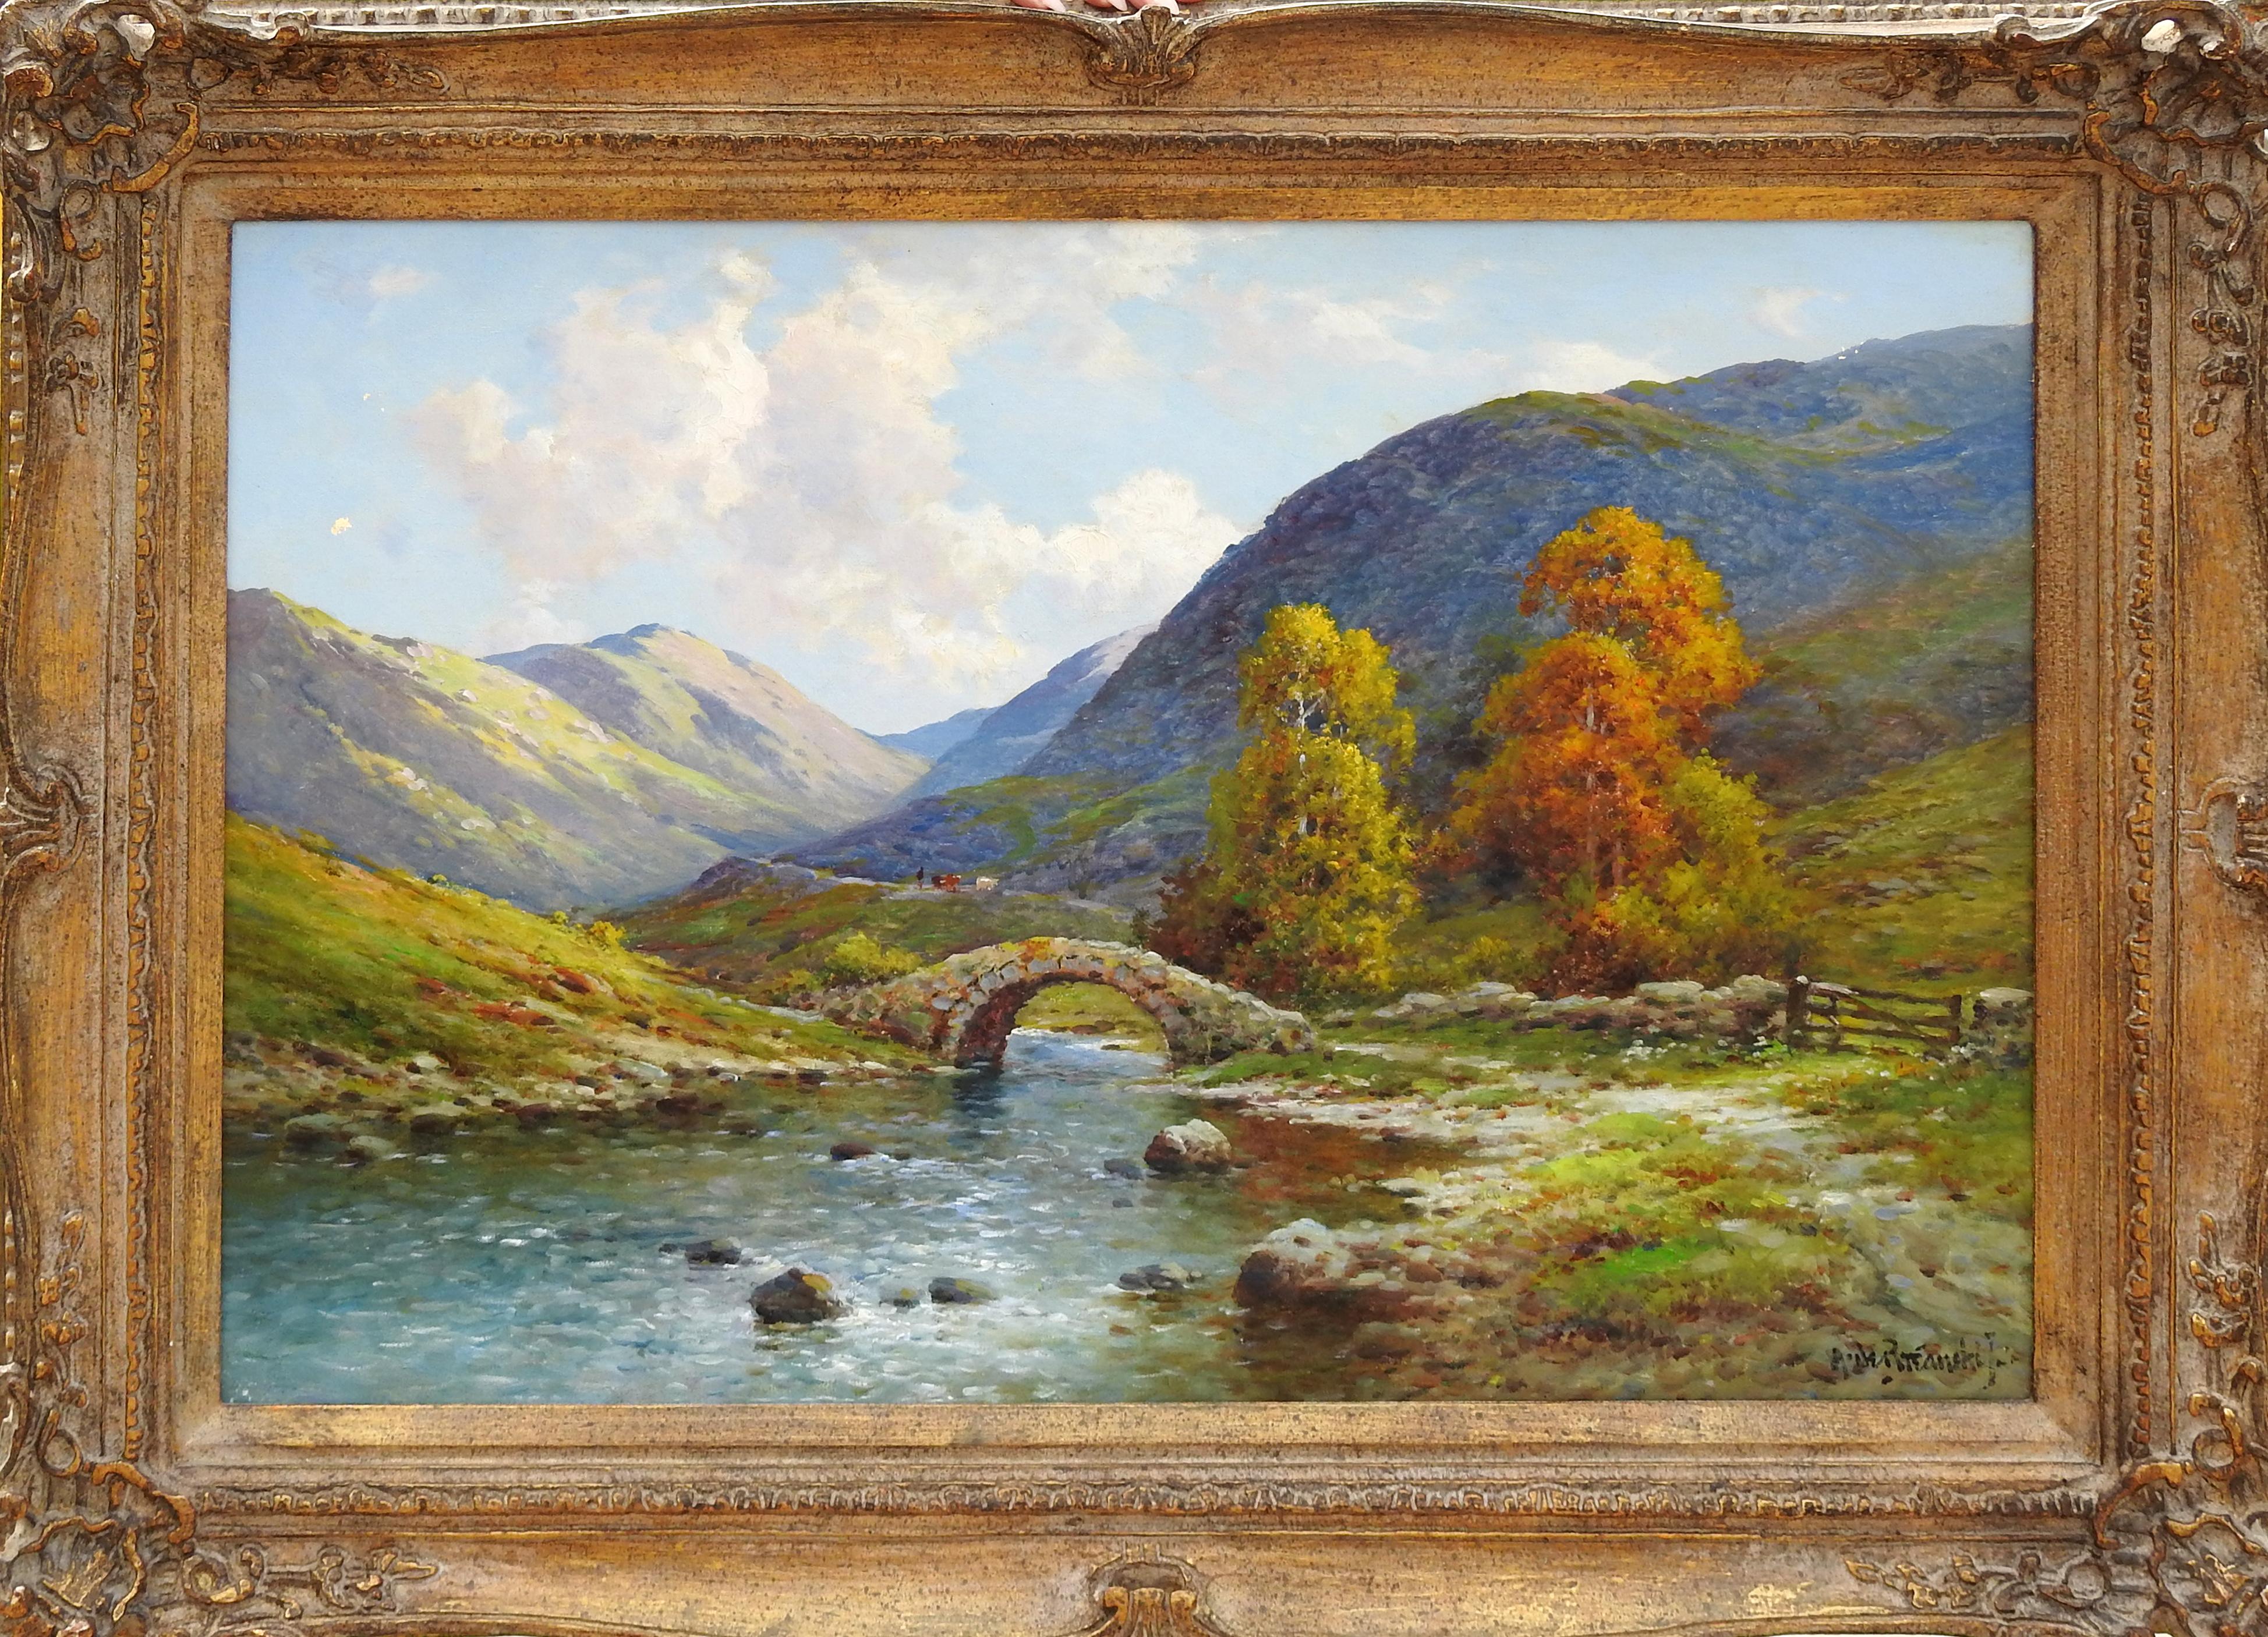 Alfred de Breanski Jnr. Landscape Painting - "At Warradale Head, Cumberland", Alfred De Breanksi Jr., Impressionist Landscape